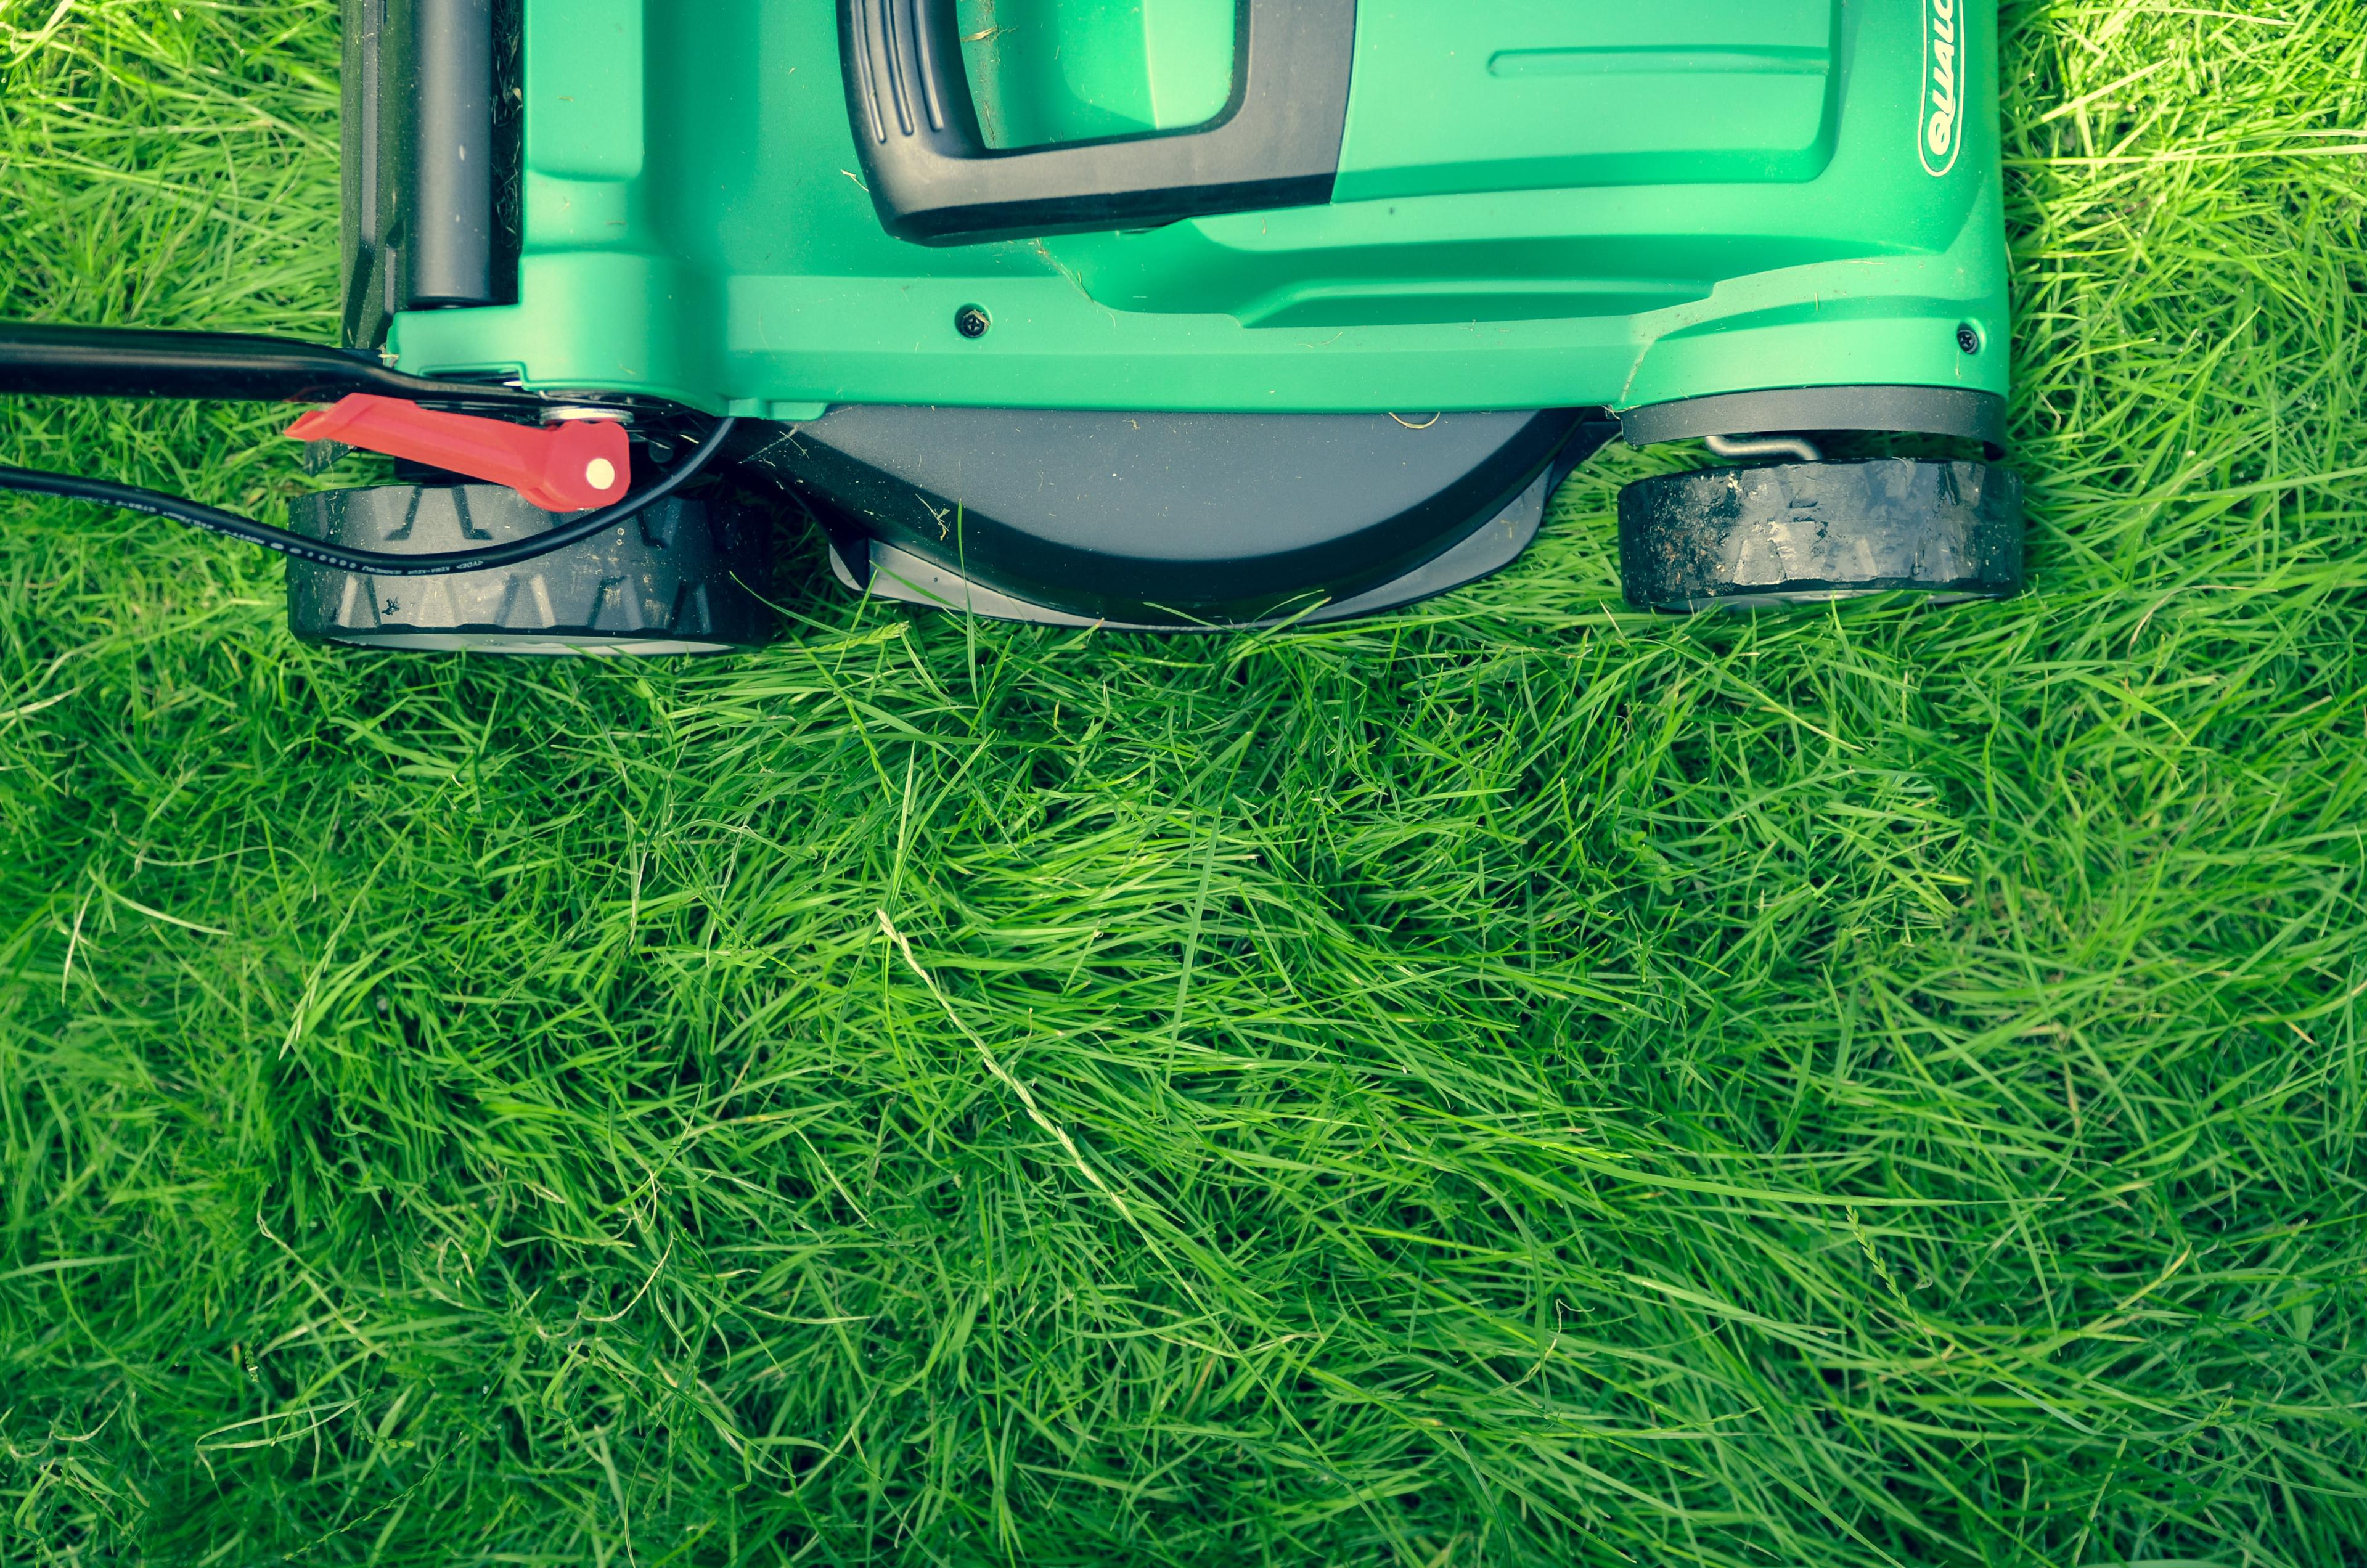 汽油动力割草机能够生产更多的空气污染比汽车。